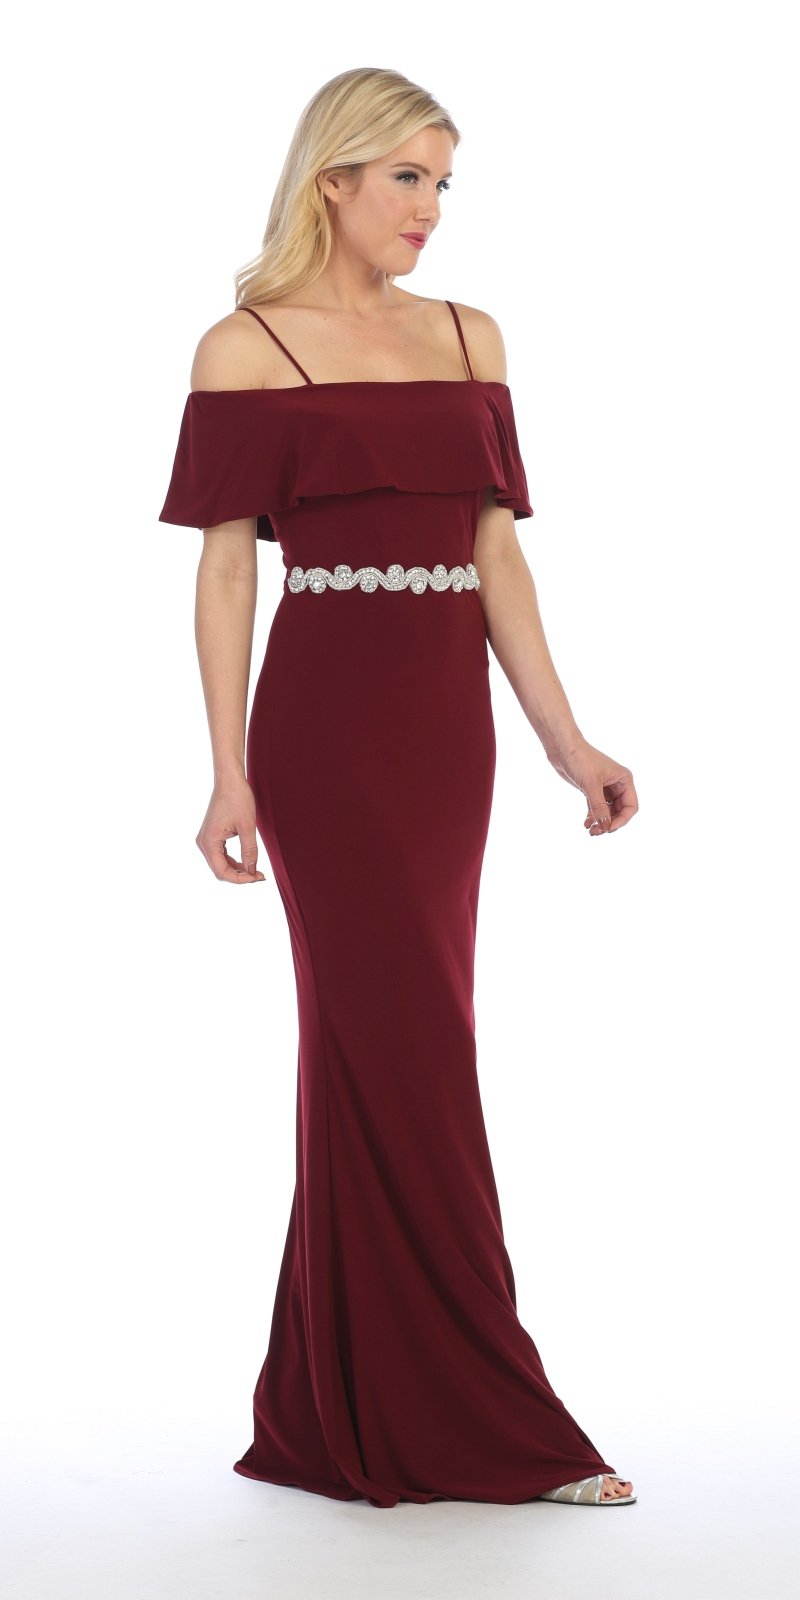 Celavie 6332 Burgundy Floor Length Evening Gown Off Shoulder